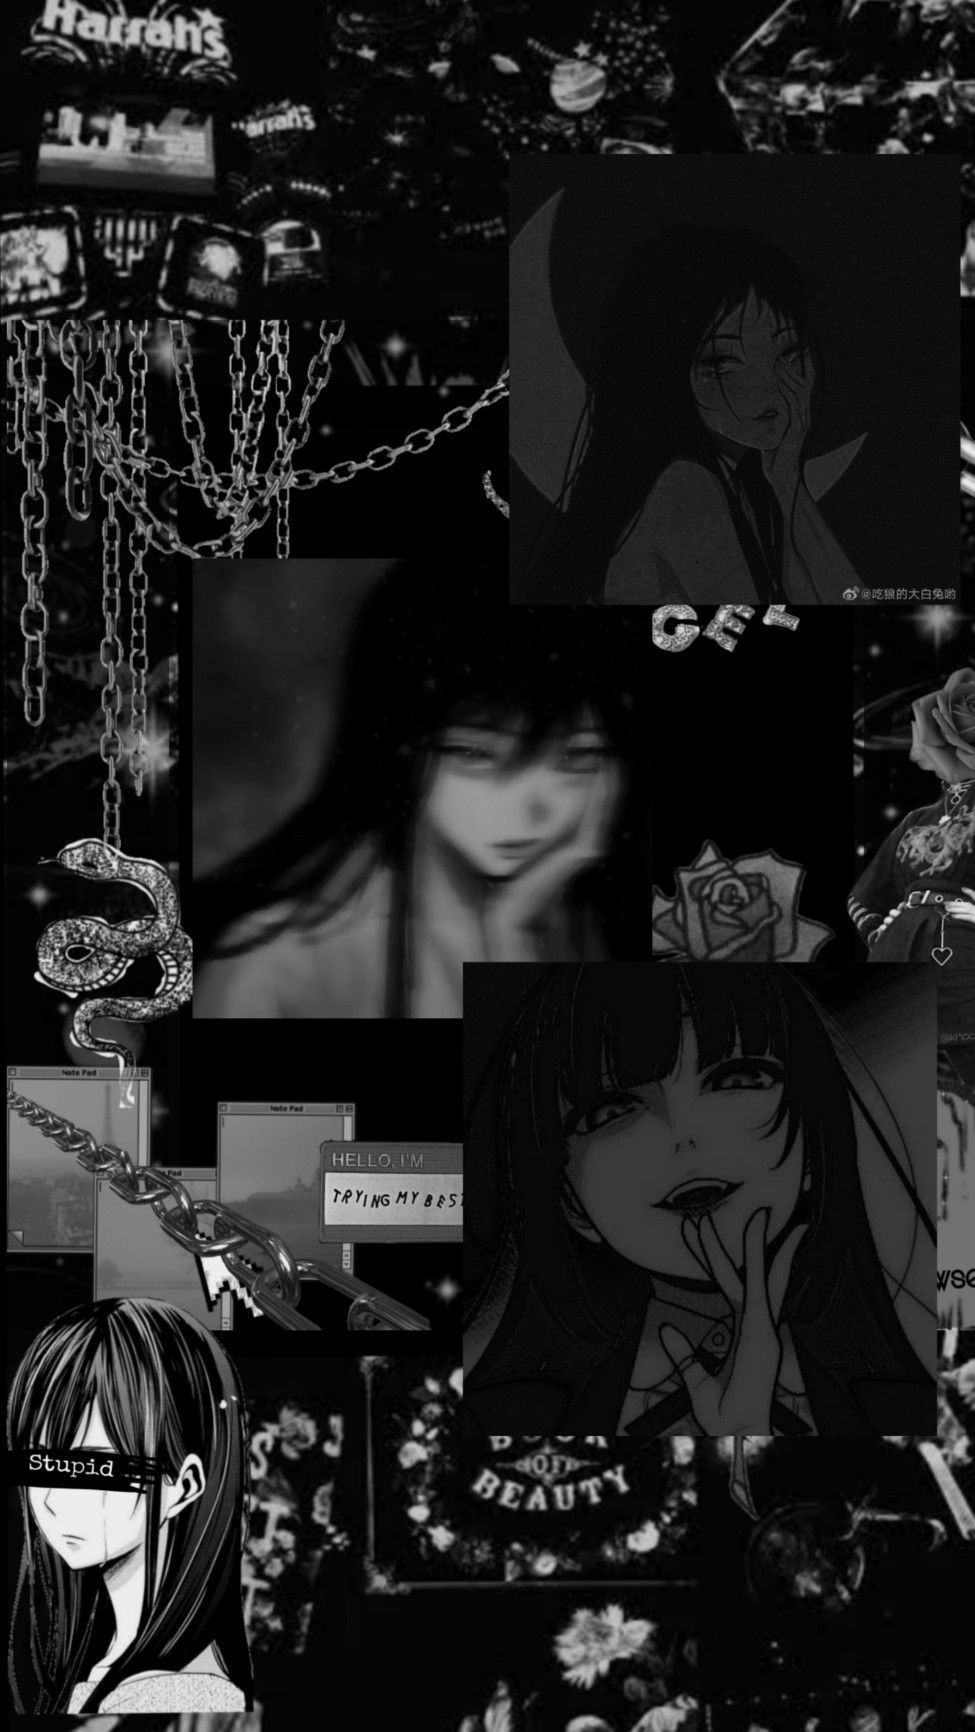 Black and white aesthetic wallpaper for phone. - Dark anime, black anime, anime